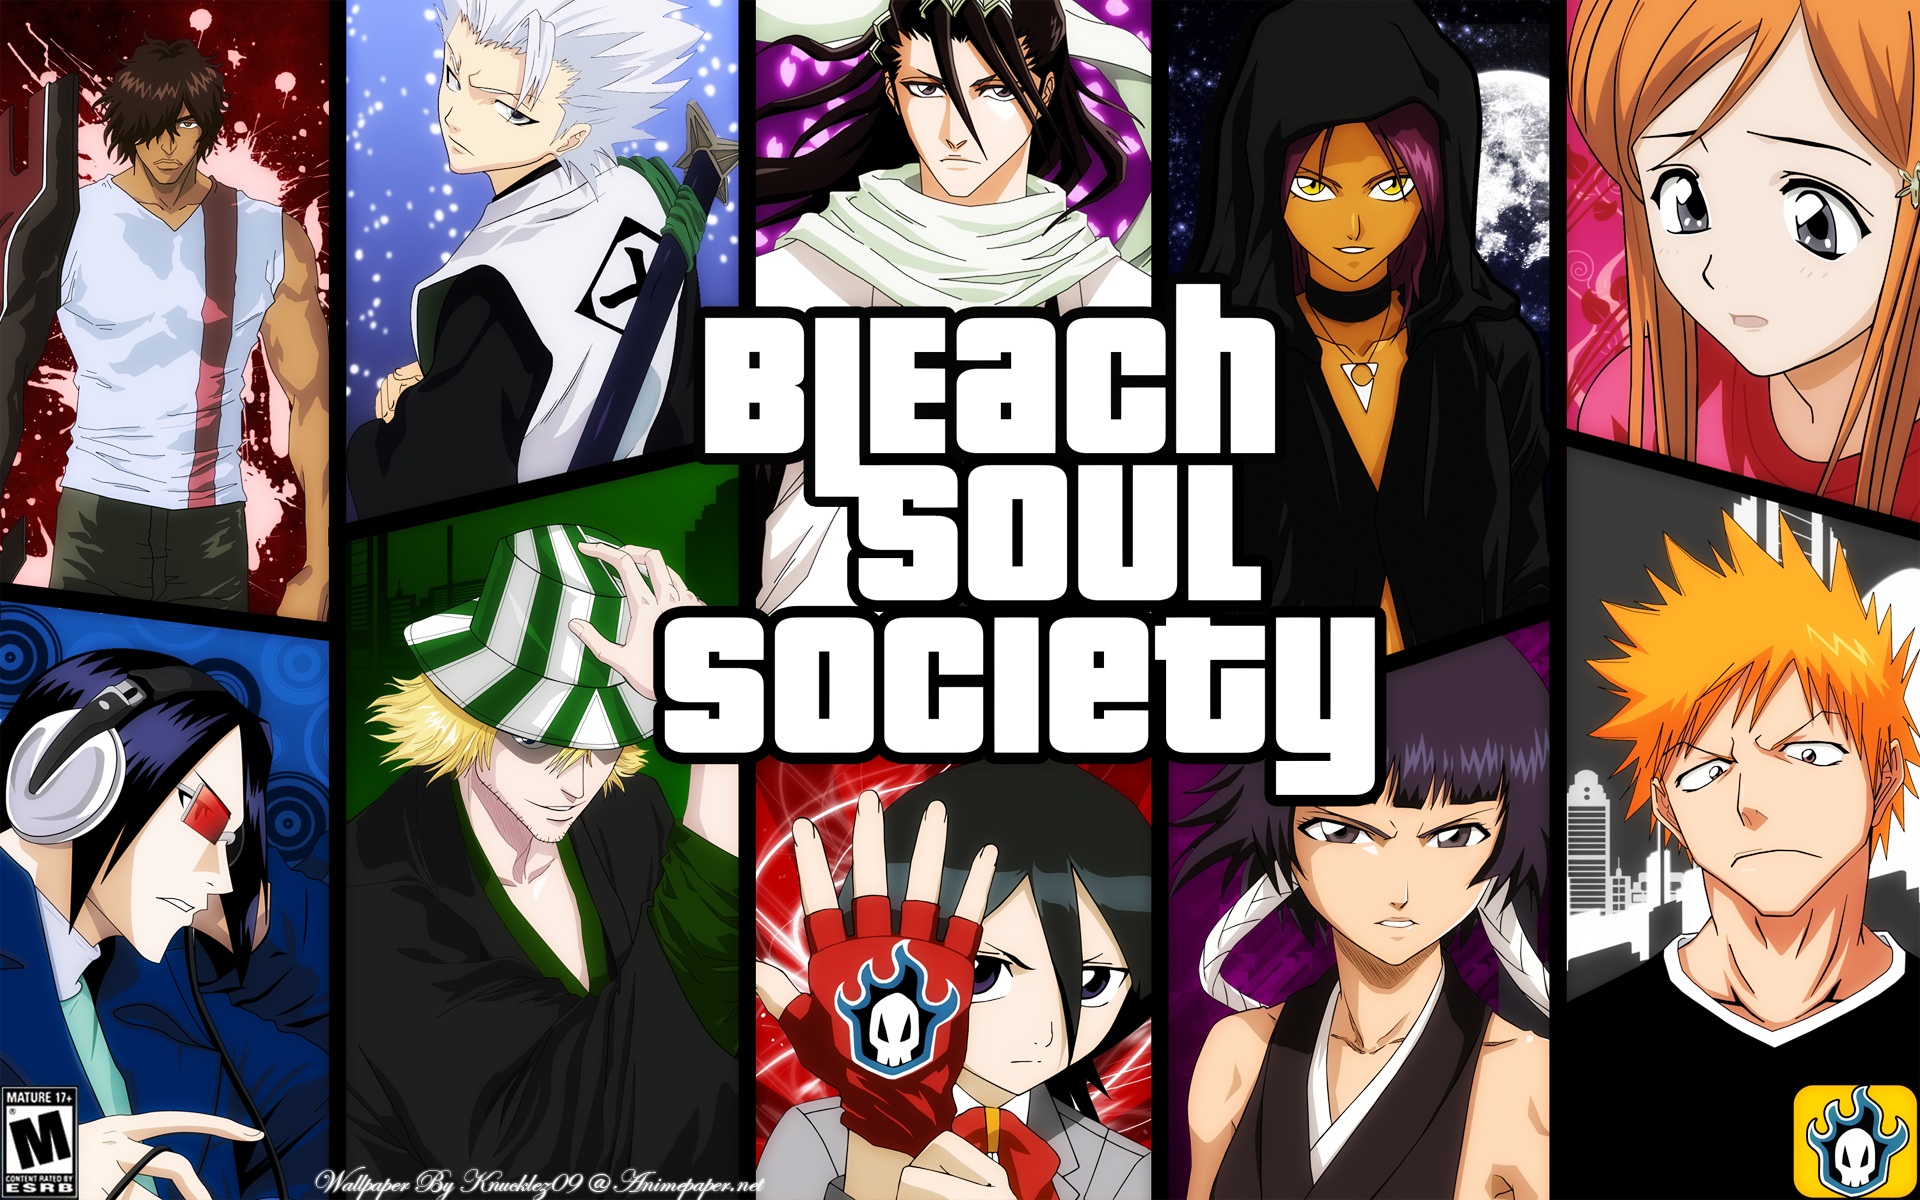 Bleach Wallpaper: Bleach soul Society